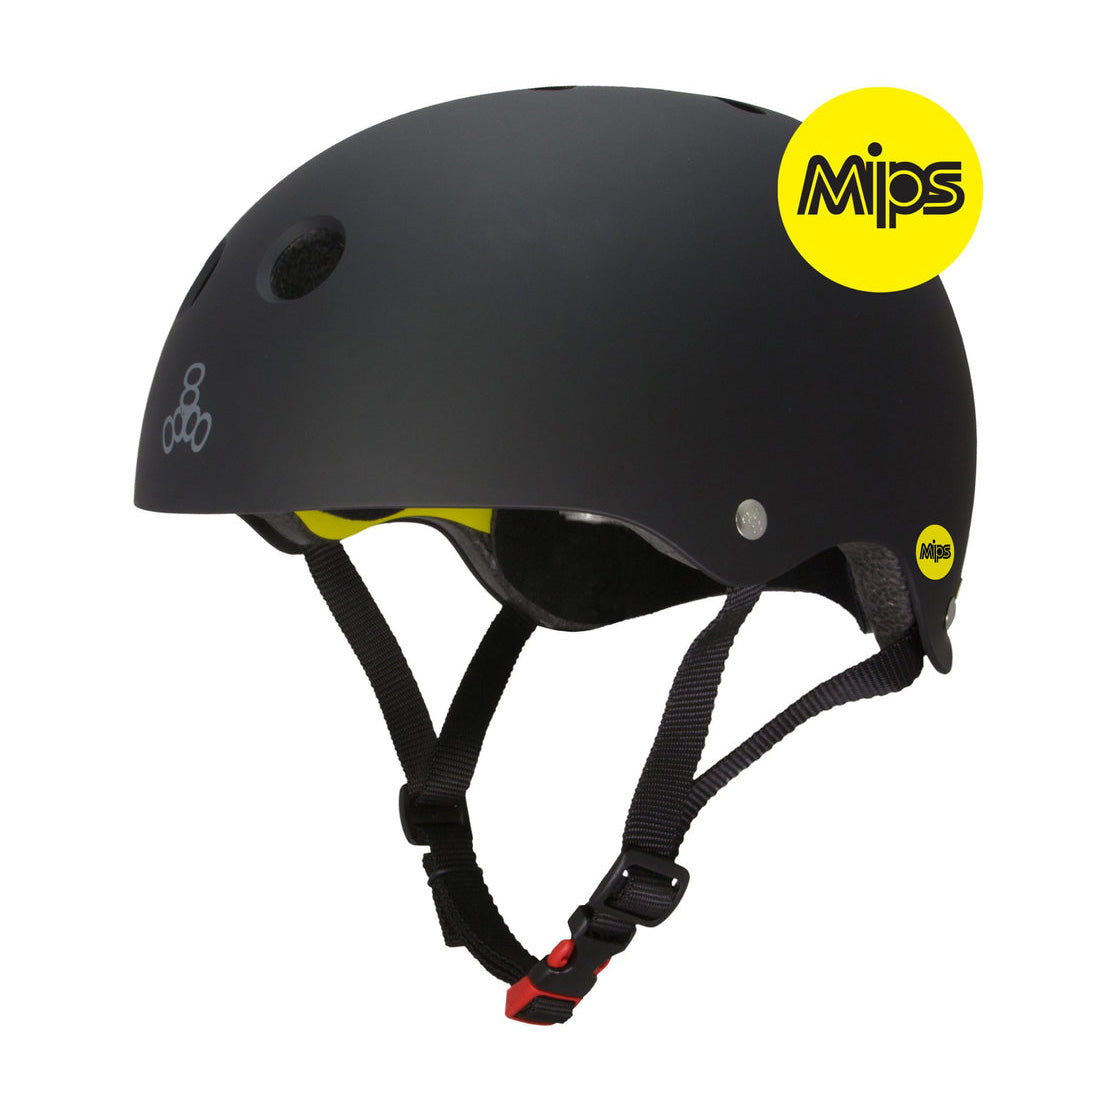 Triple 8 Skate 2 Cert MIPS Helmet - Black Rubber Helmets